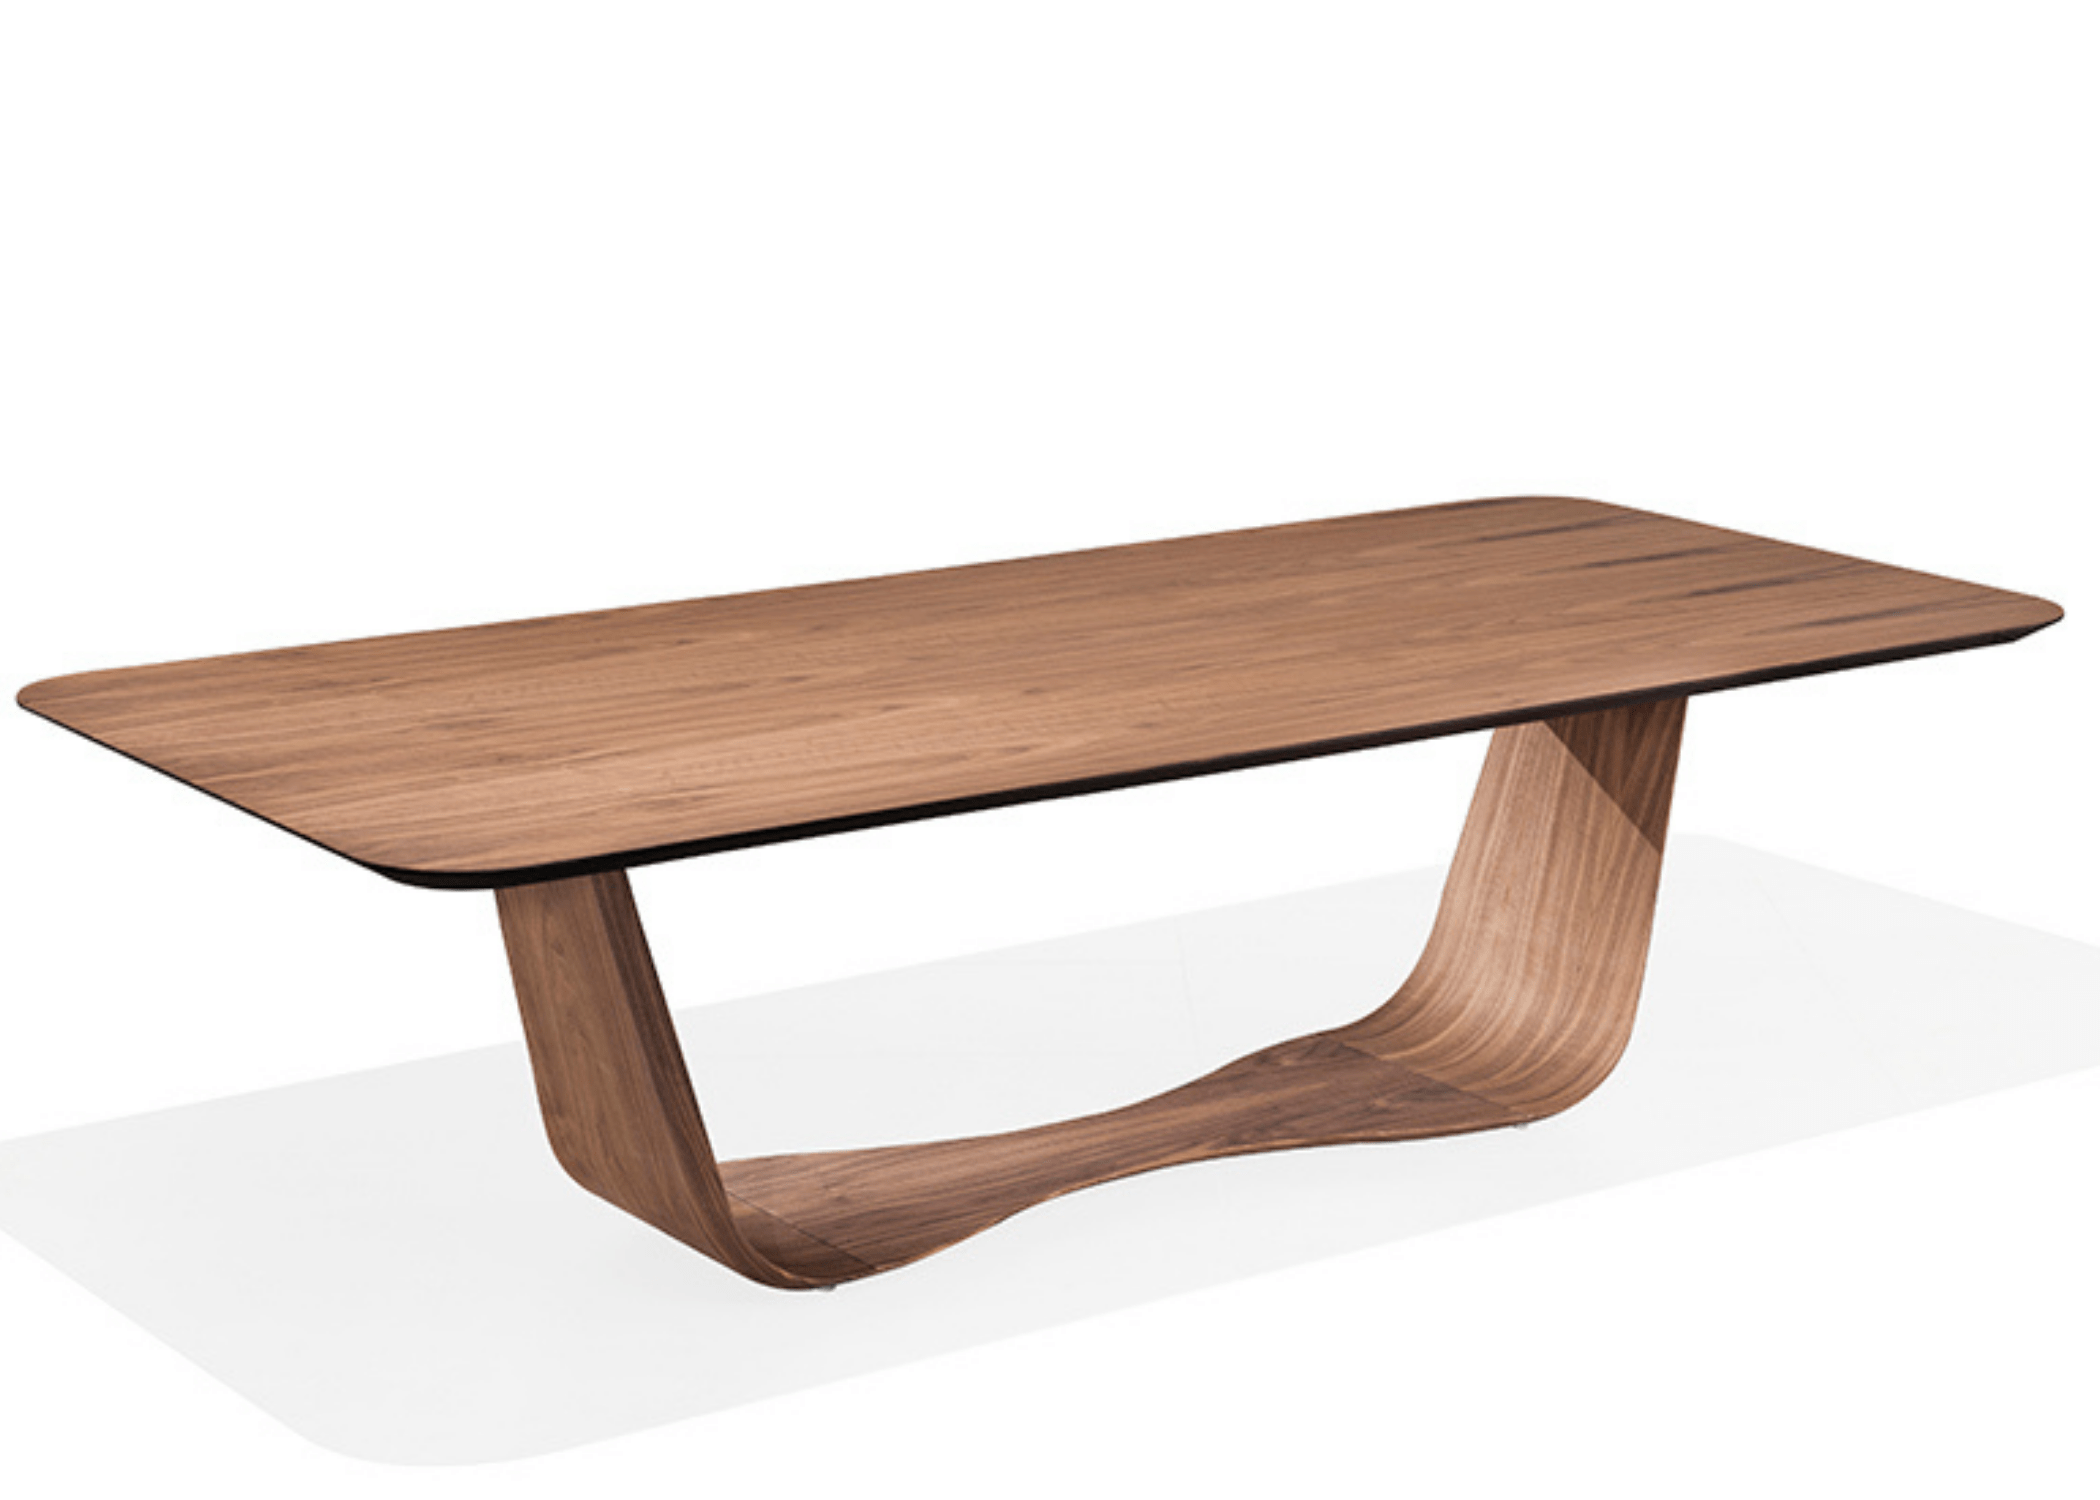 Refeição sensorial em torno da mesa Eros, celebrando a elegância do design e a beleza da madeira.